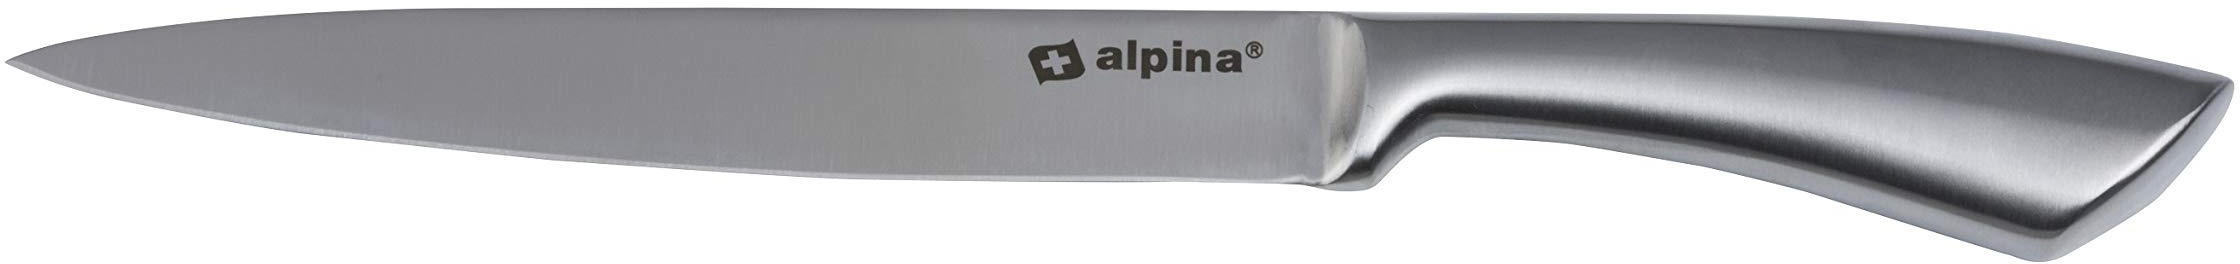 alpina Kochmesser - Küchenmesser 33 cm - Profi Messer - Multifunktionales Chefmesser - Allzweckmesser aus Edelstahl - Scharfe Klinge - Silber,